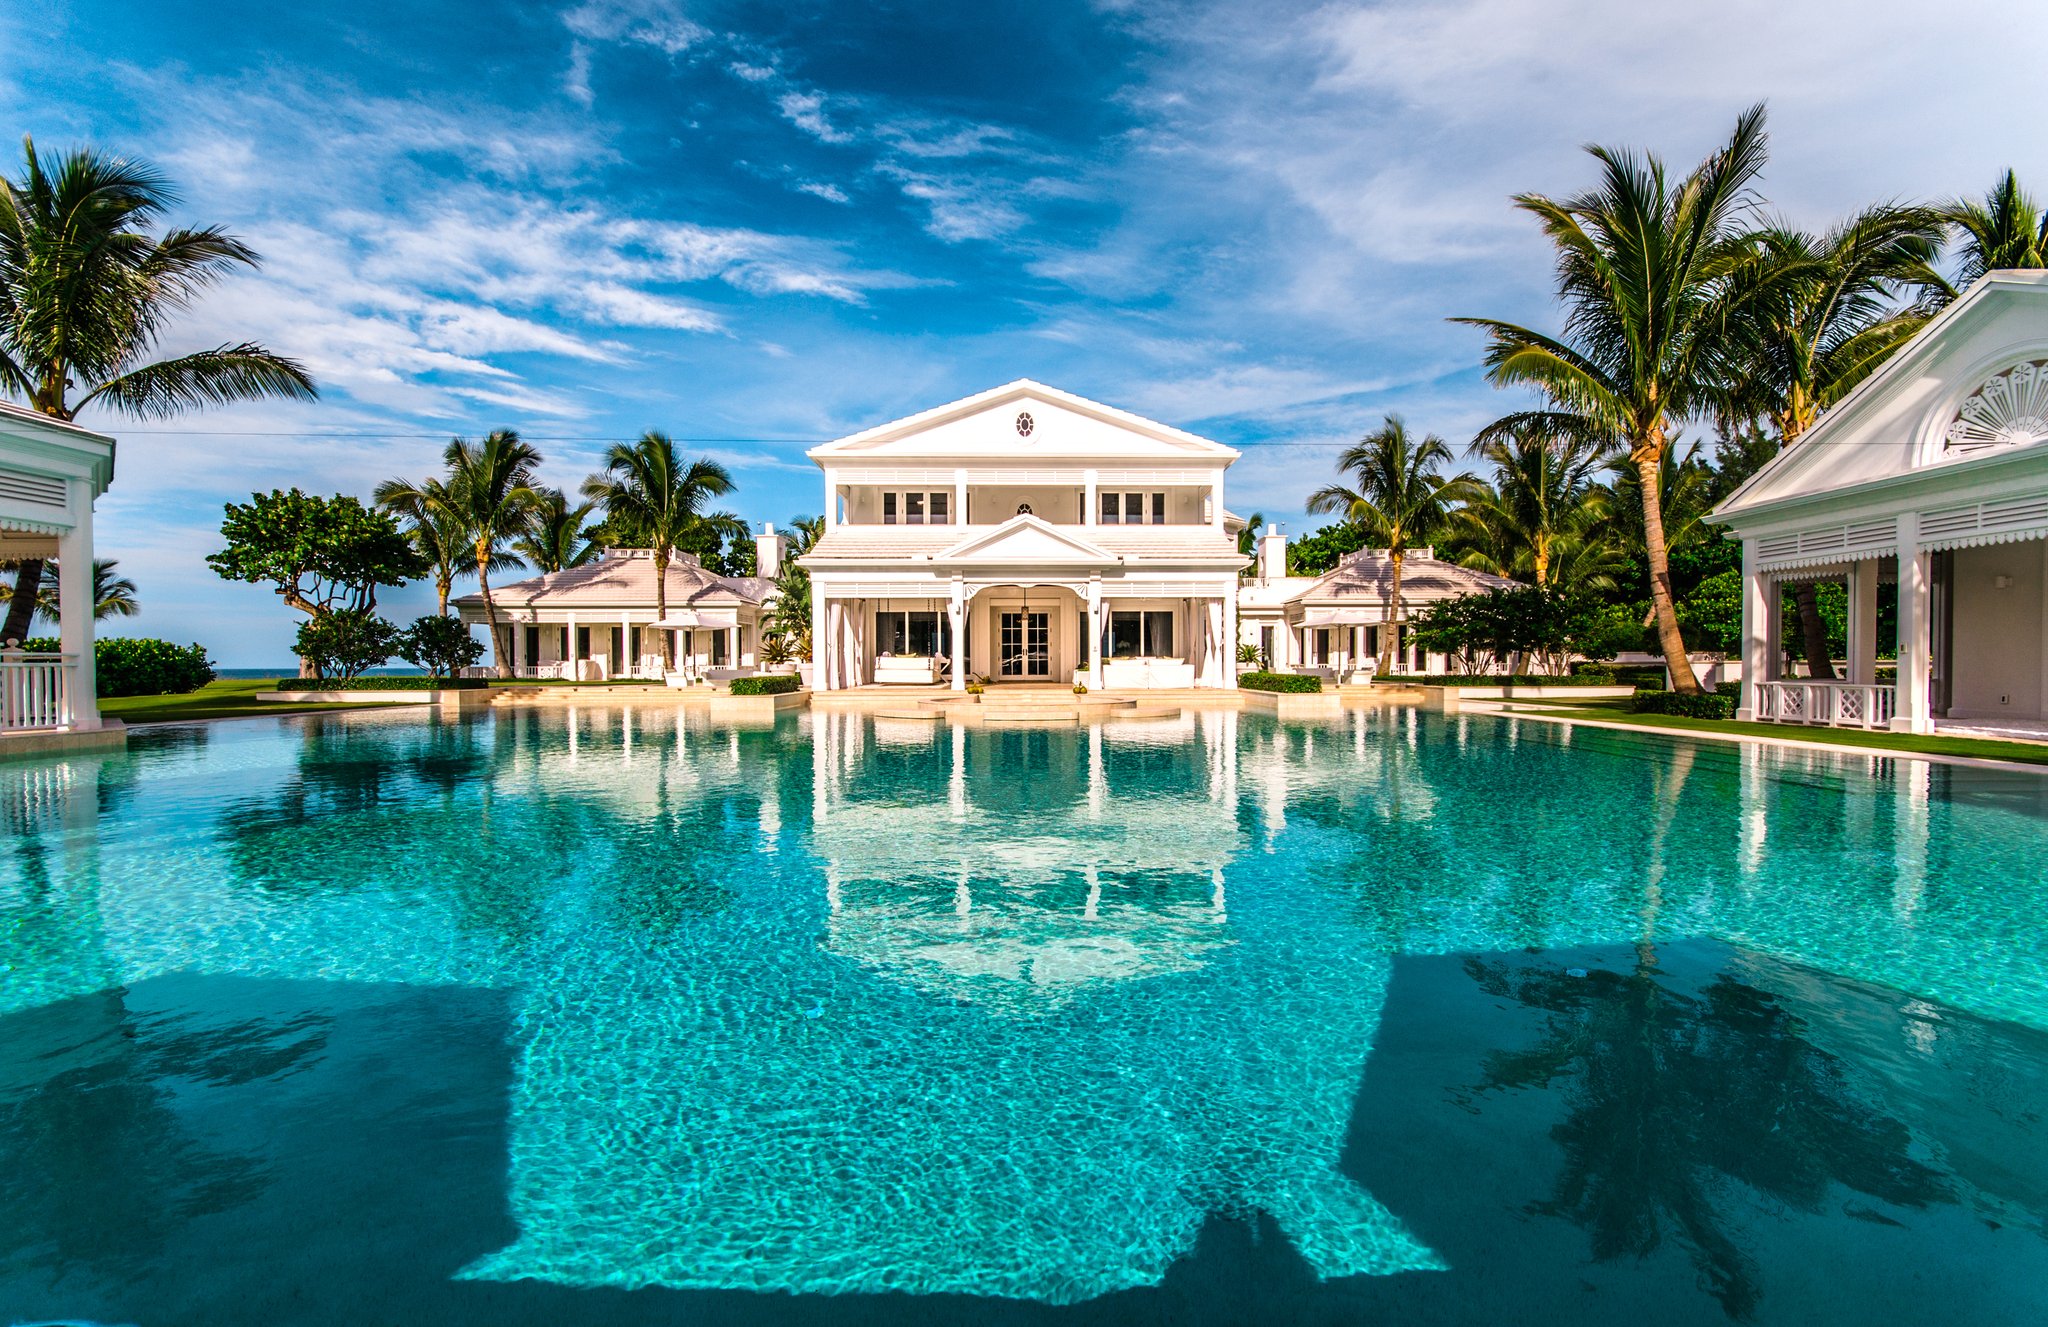 Home Design: Big Elegant Mansion With Large Pool